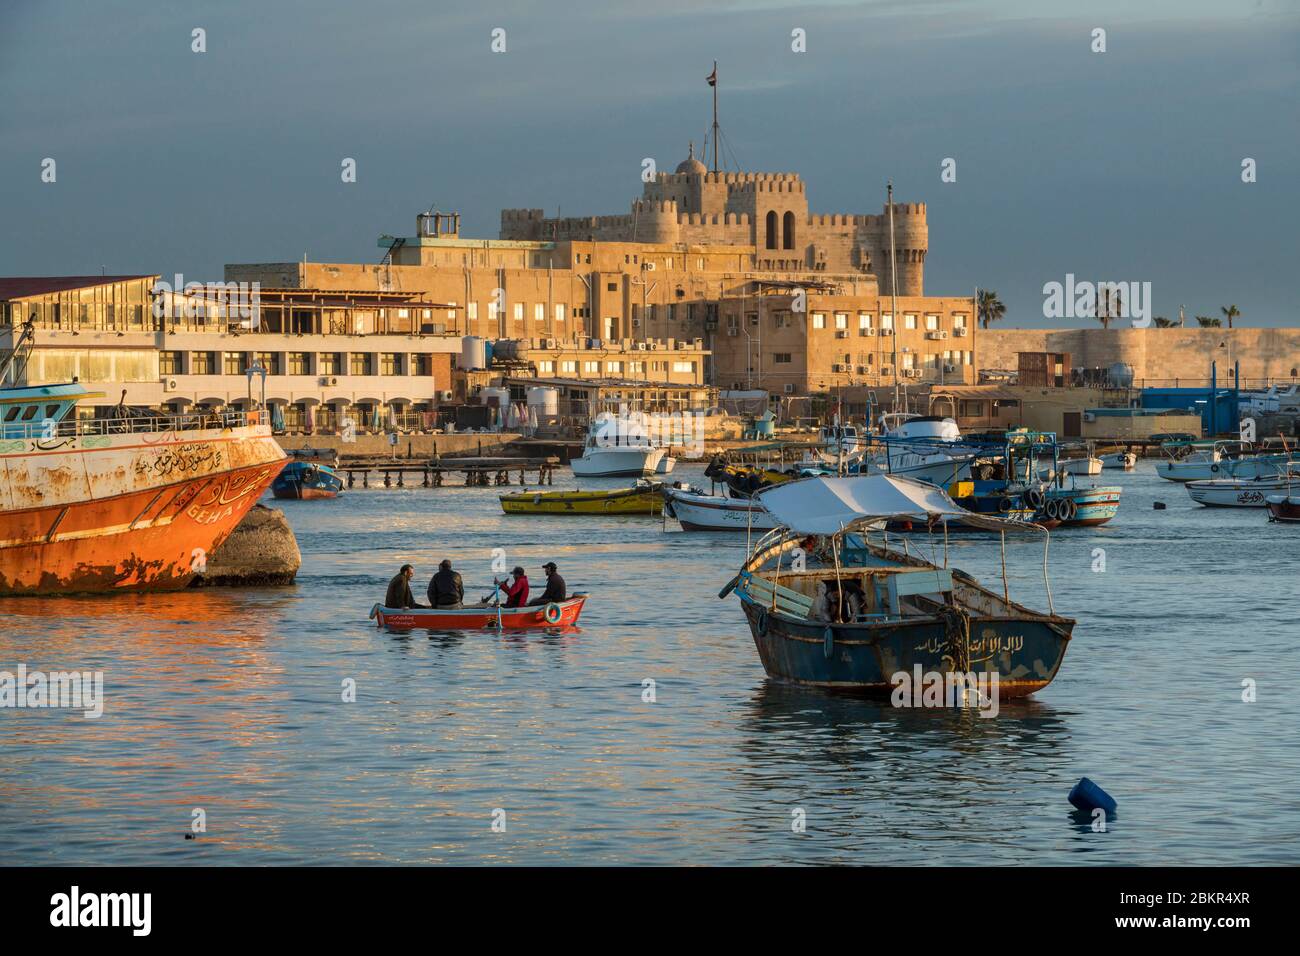 Egitto, basso Egitto, la costa mediterranea, Alessandria, la Corniche, barche da pesca ancorate nella baia, fortezza di Qait Bay sul retro Foto Stock